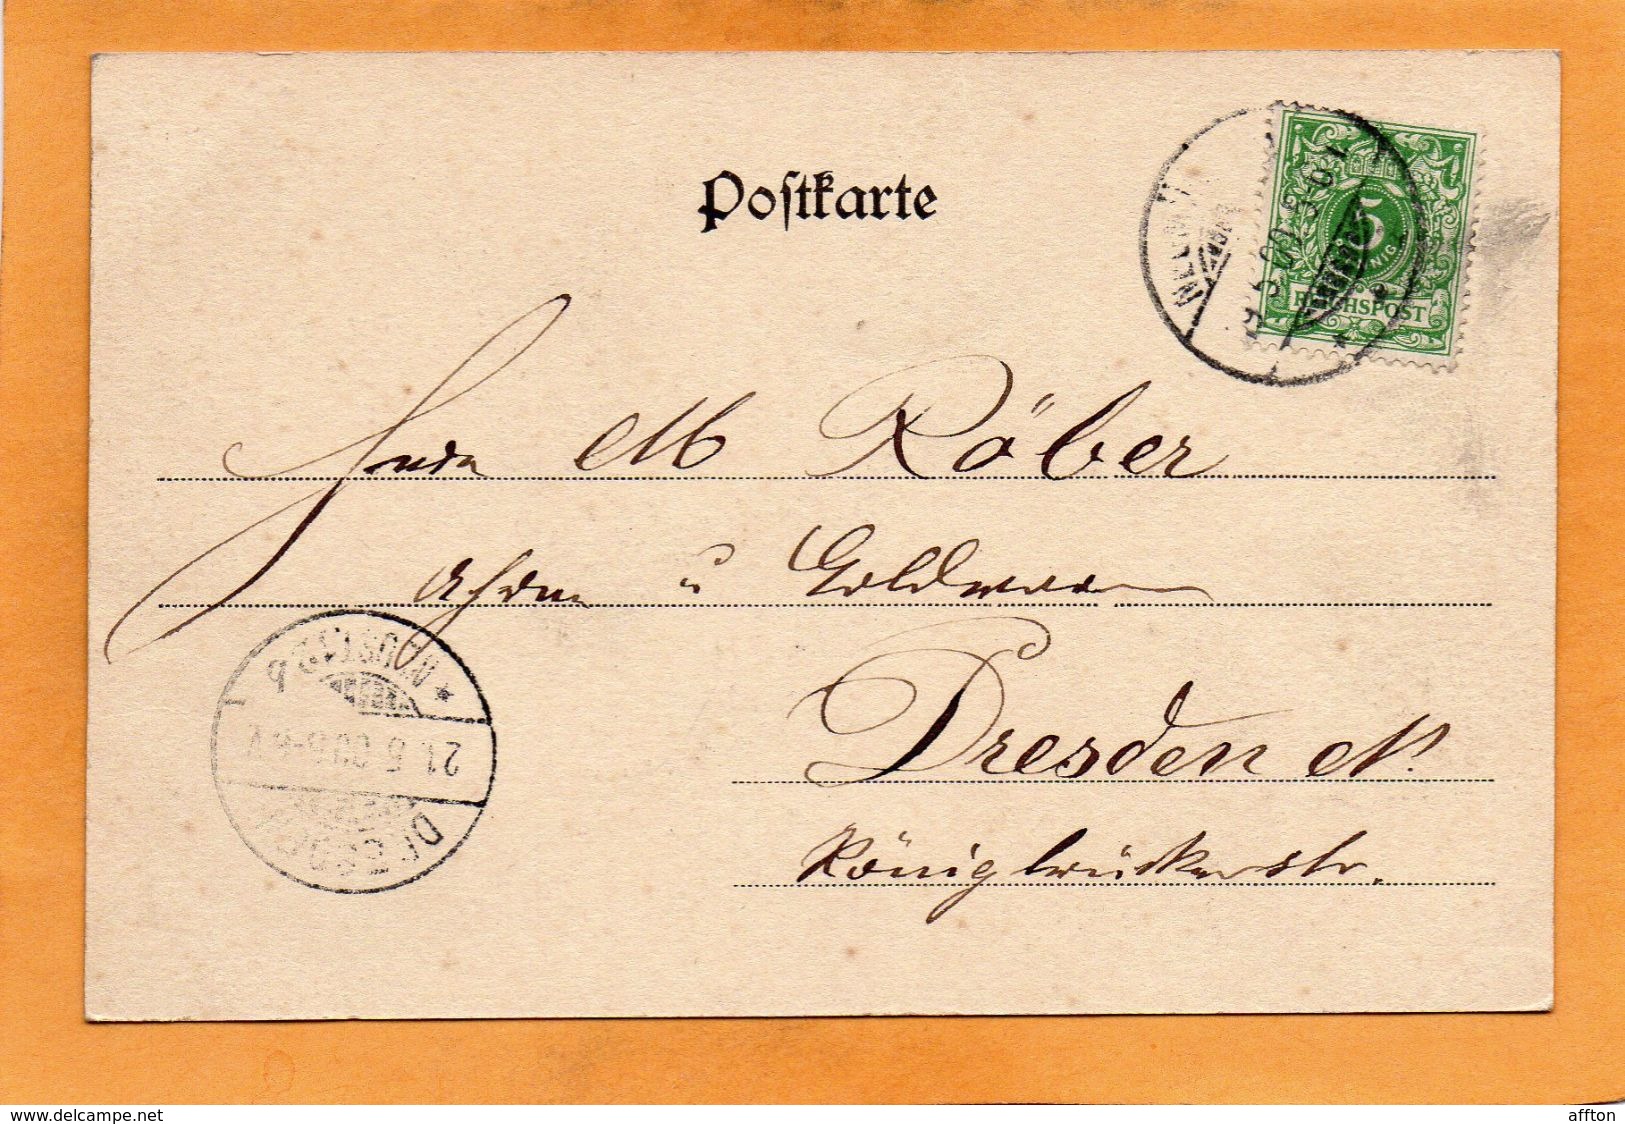 Gruss Aus Neumunster Germany 1900 Postcard Mailed - Neumünster